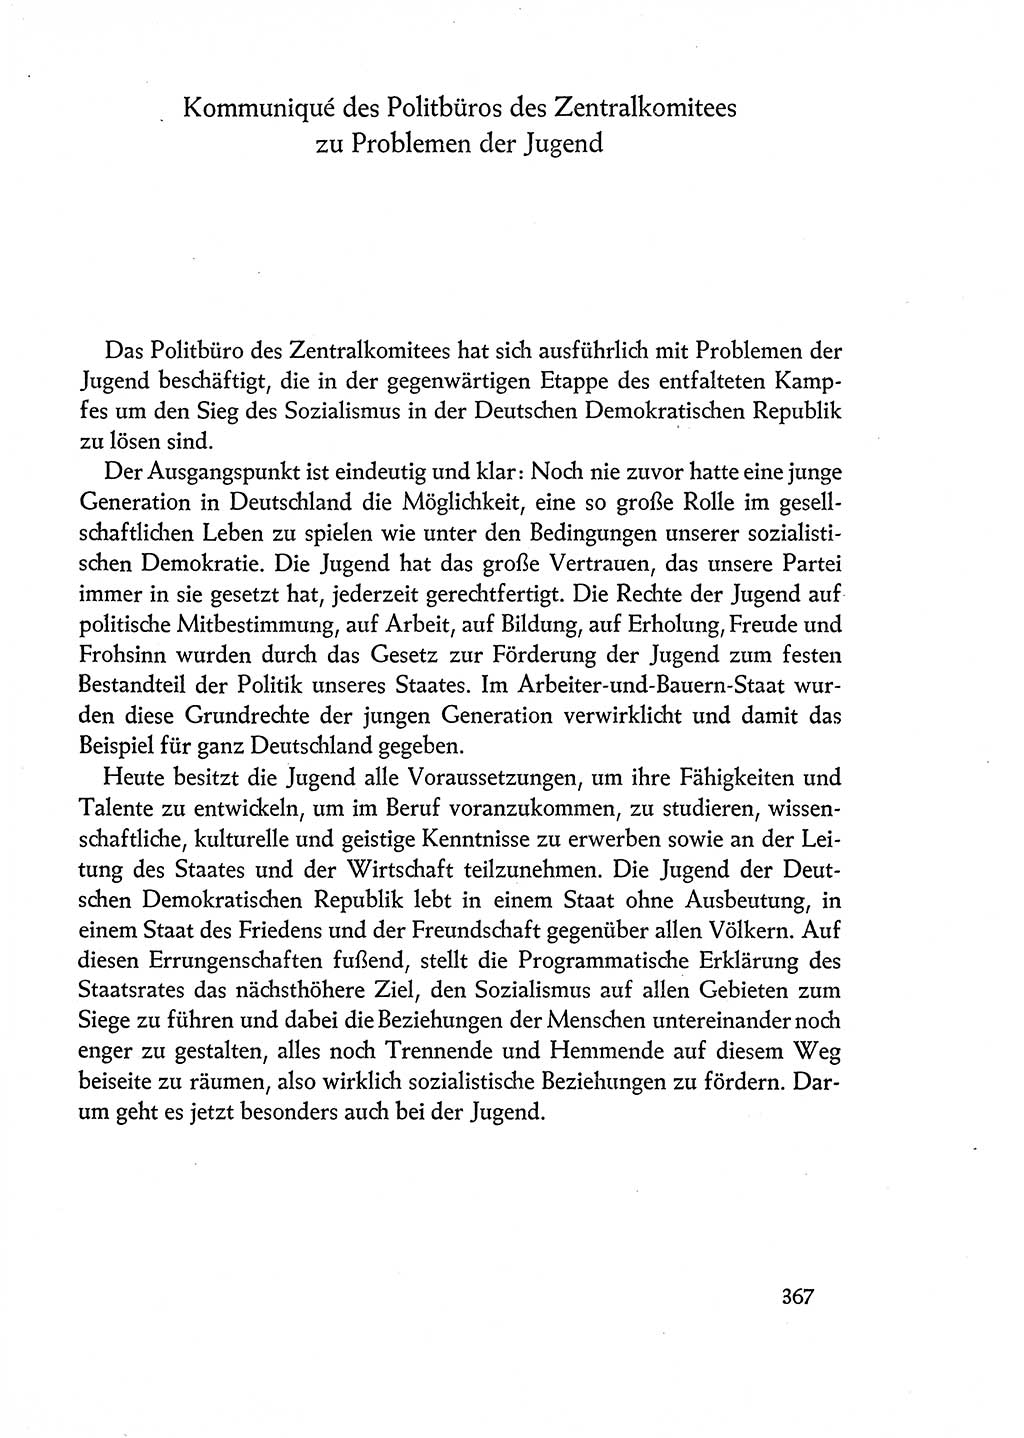 Dokumente der Sozialistischen Einheitspartei Deutschlands (SED) [Deutsche Demokratische Republik (DDR)] 1960-1961, Seite 367 (Dok. SED DDR 1960-1961, S. 367)